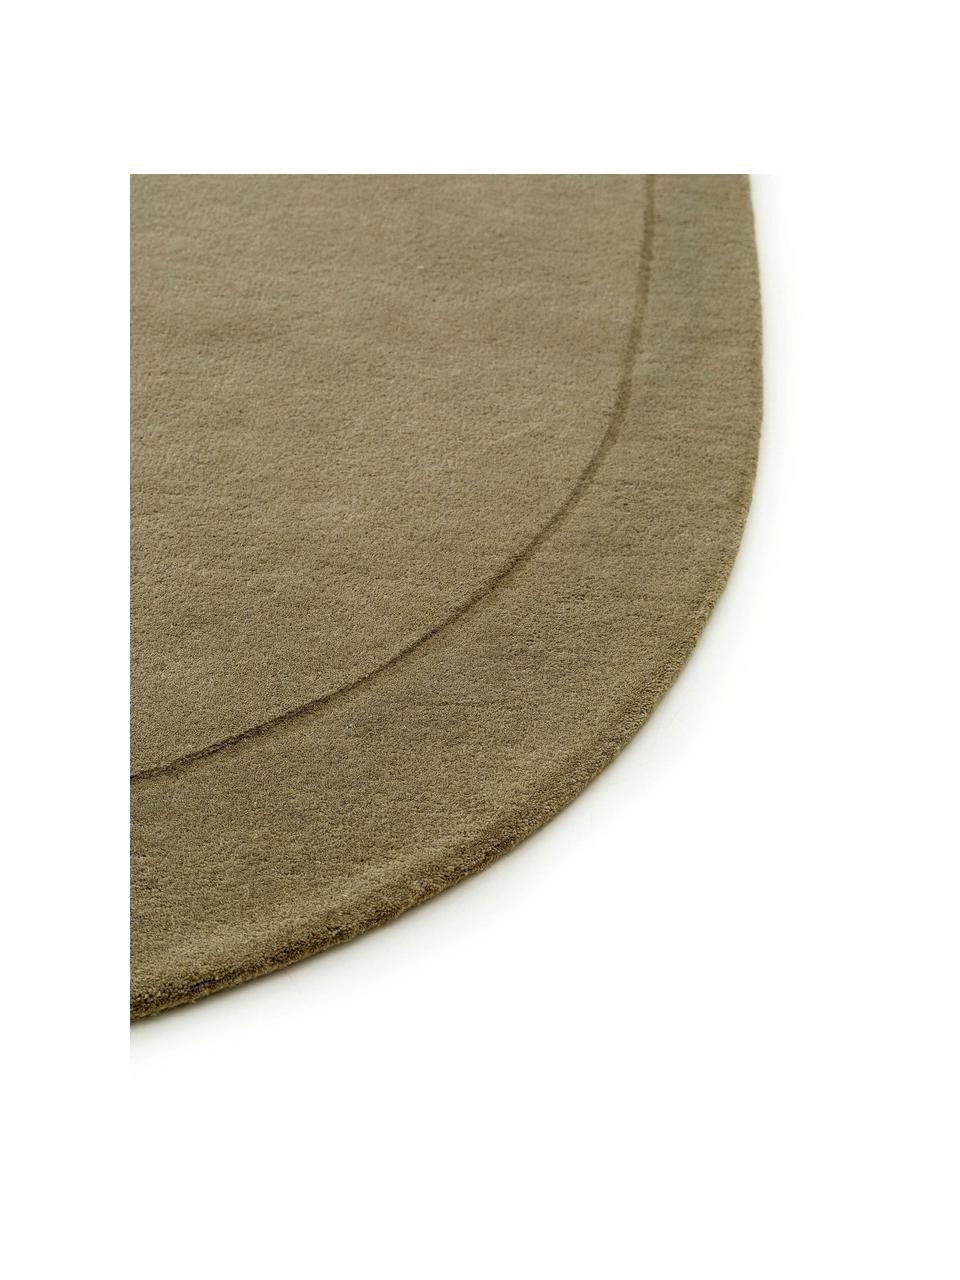 Ručně tkaný vlněný koberec v organickém tvaru Shape, 100 % vlna

V prvních týdnech používání vlněných koberců se může objevit charakteristický jev uvolňování vláken, který po několika týdnech používání ustane., Olivově zelená, Š 160 cm, D 230 cm (velikost M)